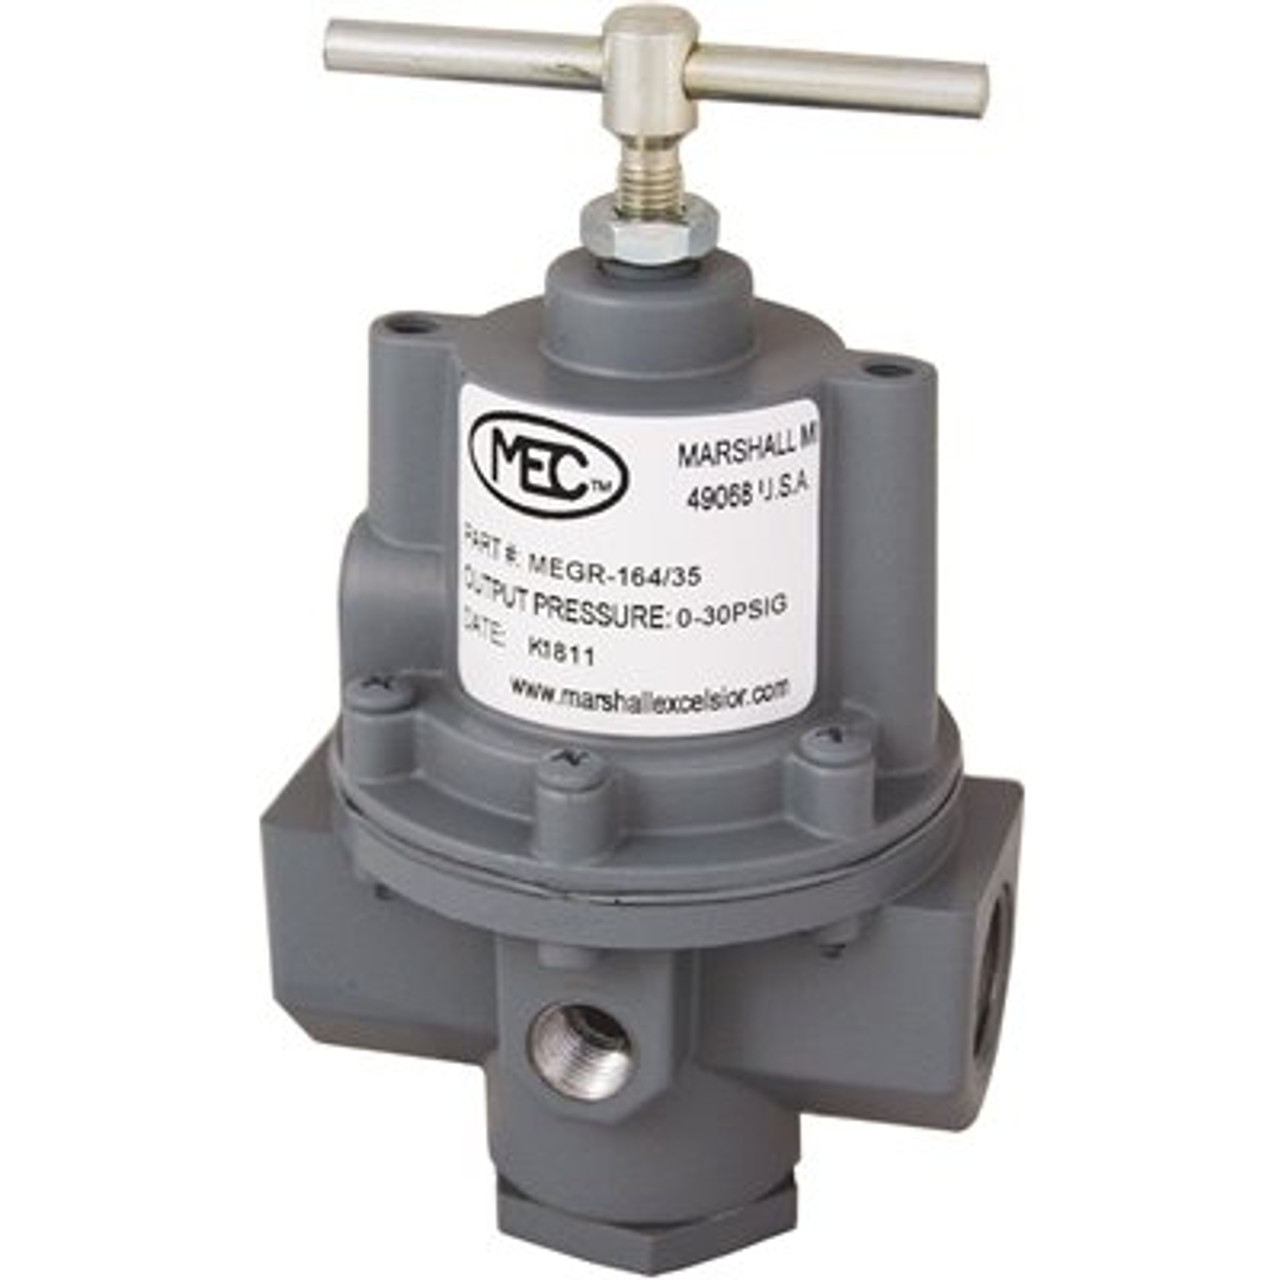 MEC High Pressure Adjustable Regulator with Tee Handle, 3/4 in. FNPT, 35-100 psi, Preset to 50 psi